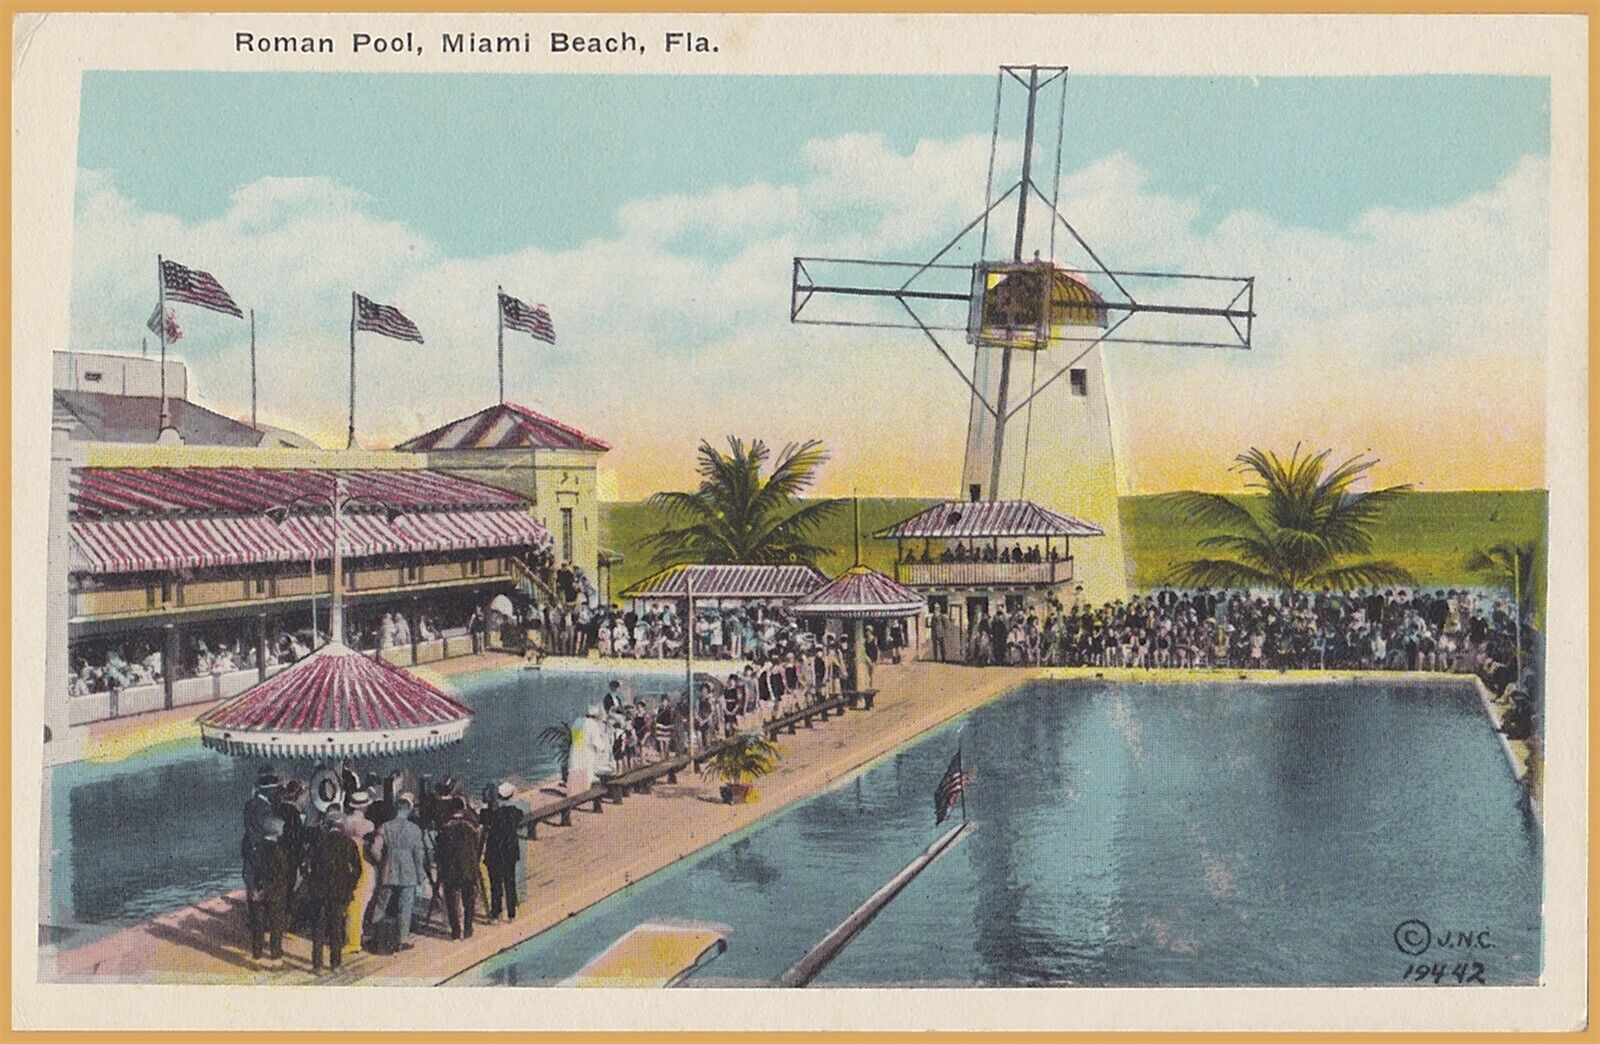 Miami Beach, FLA., Roman Pool, many people & windmill - 